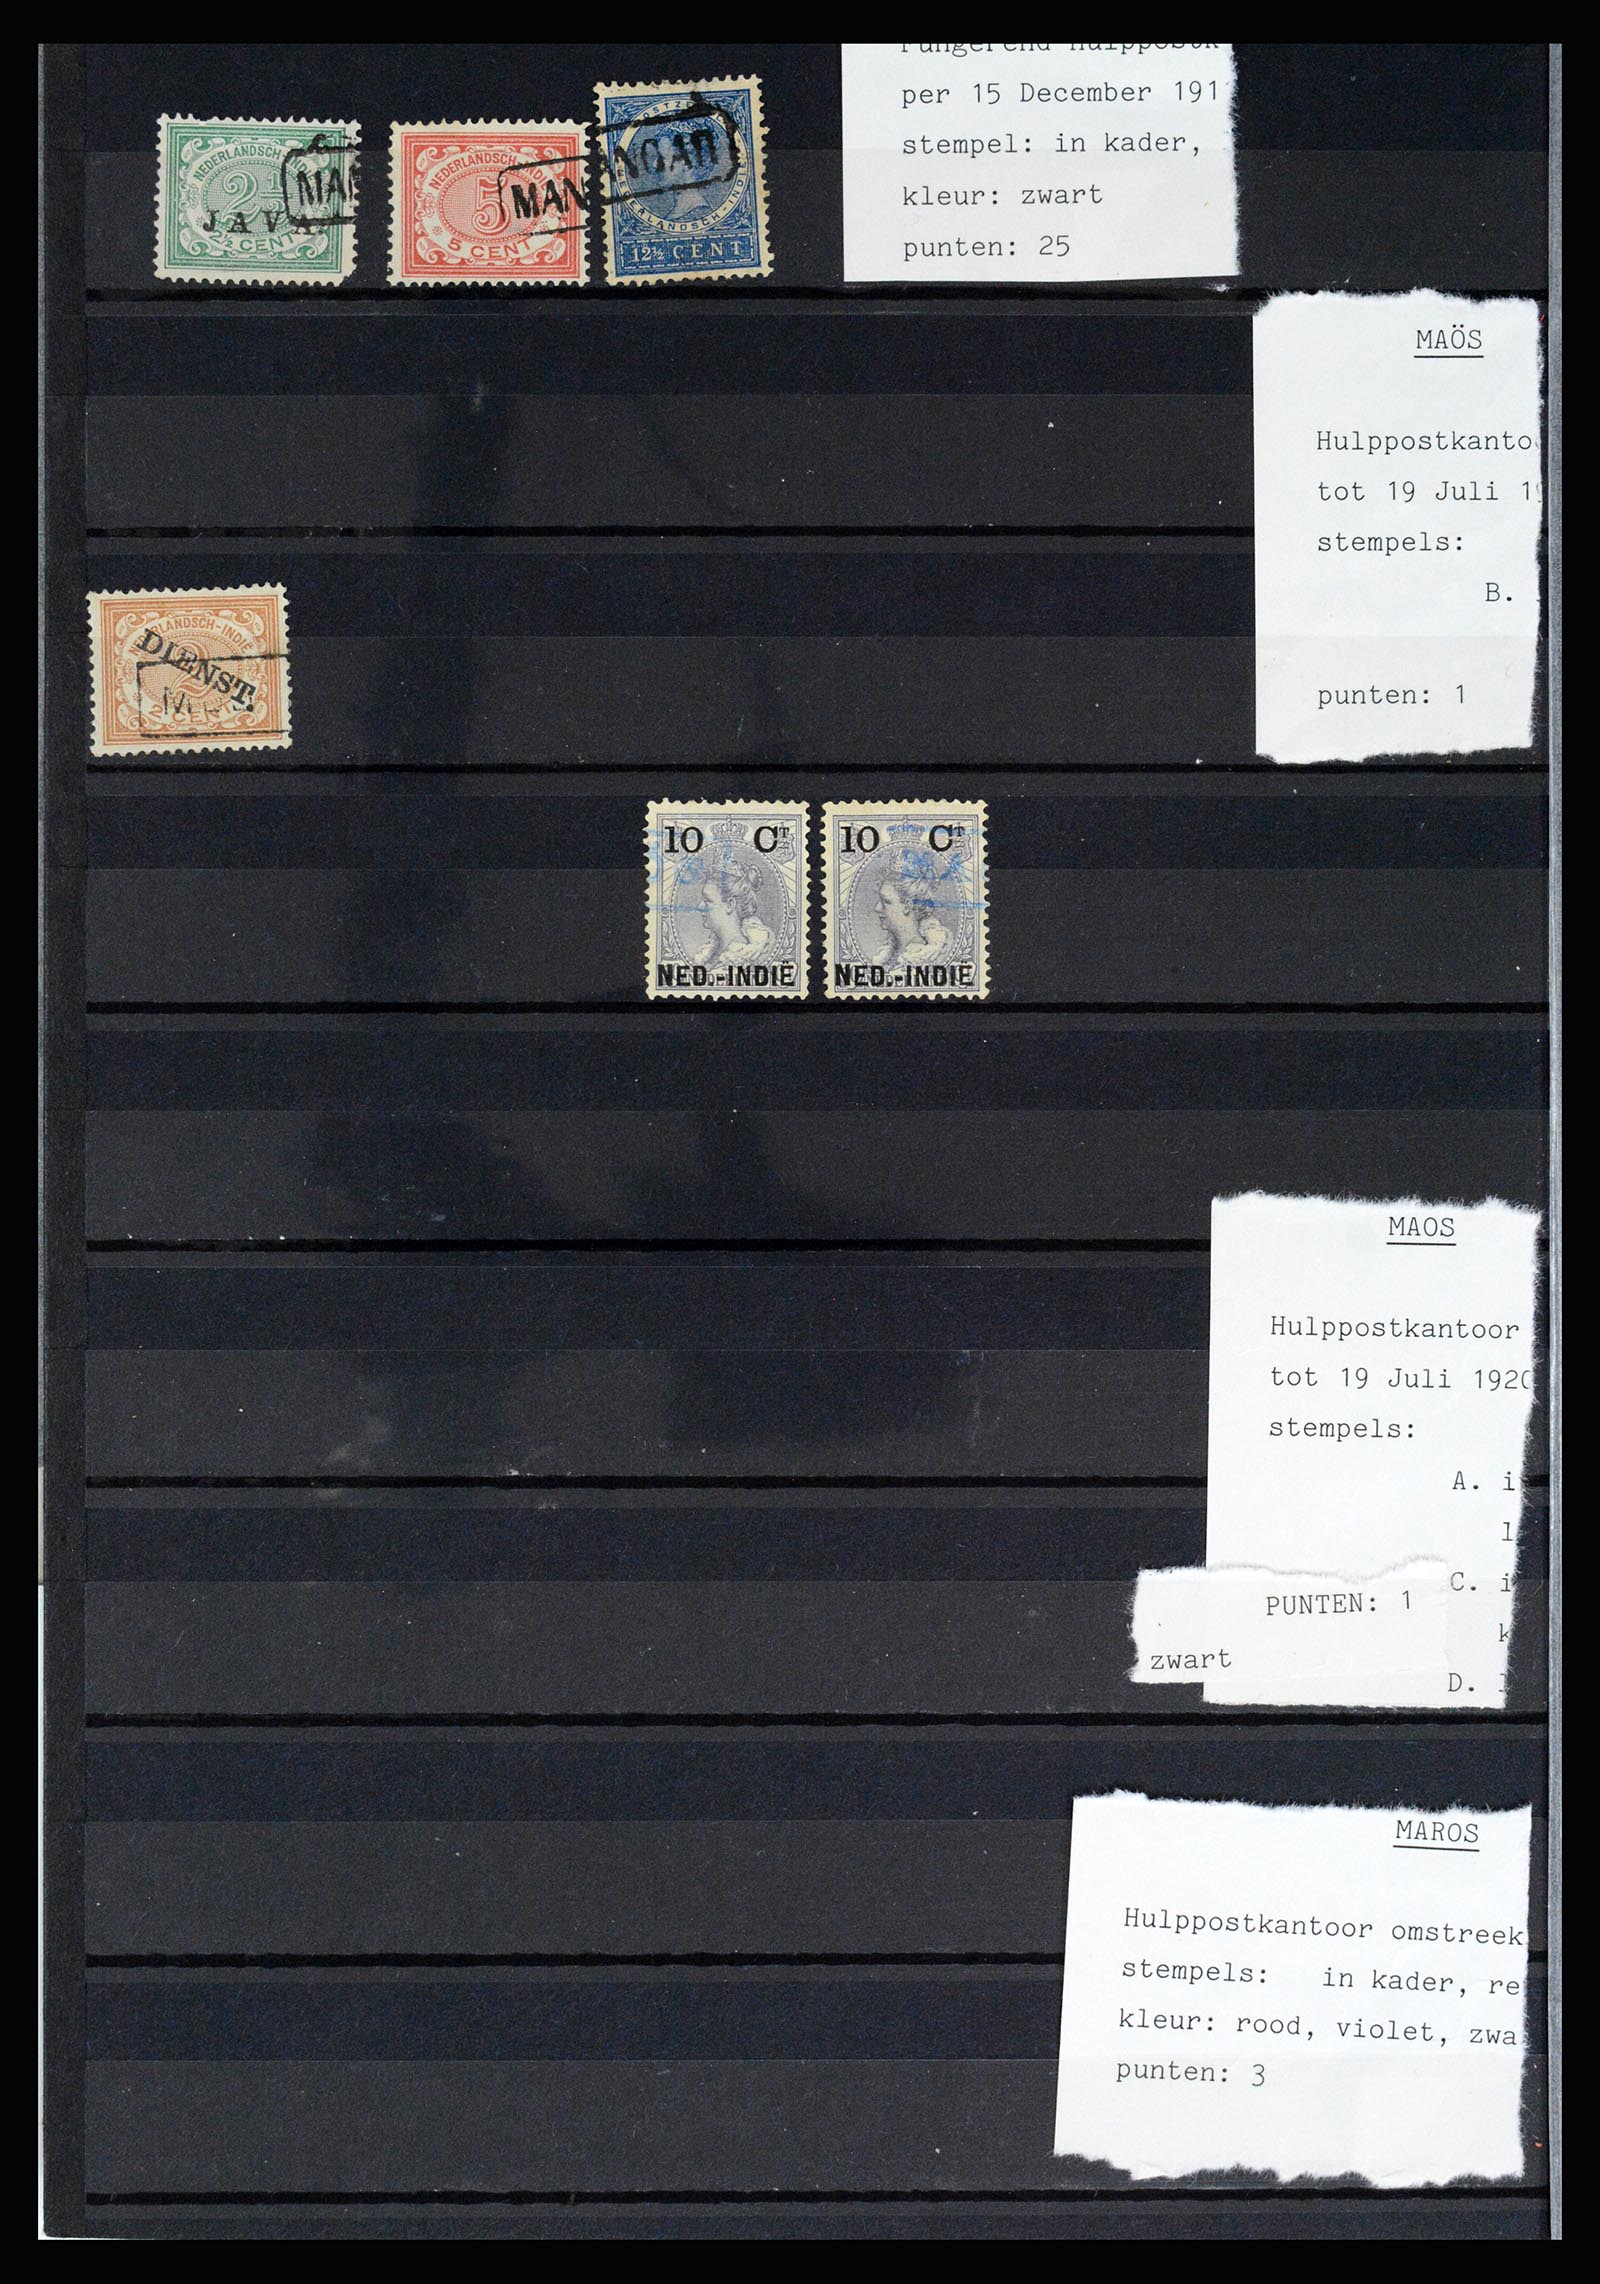 36512 044 - Stamp collection 36512 Nederlands Indië stempels 1872-1930.